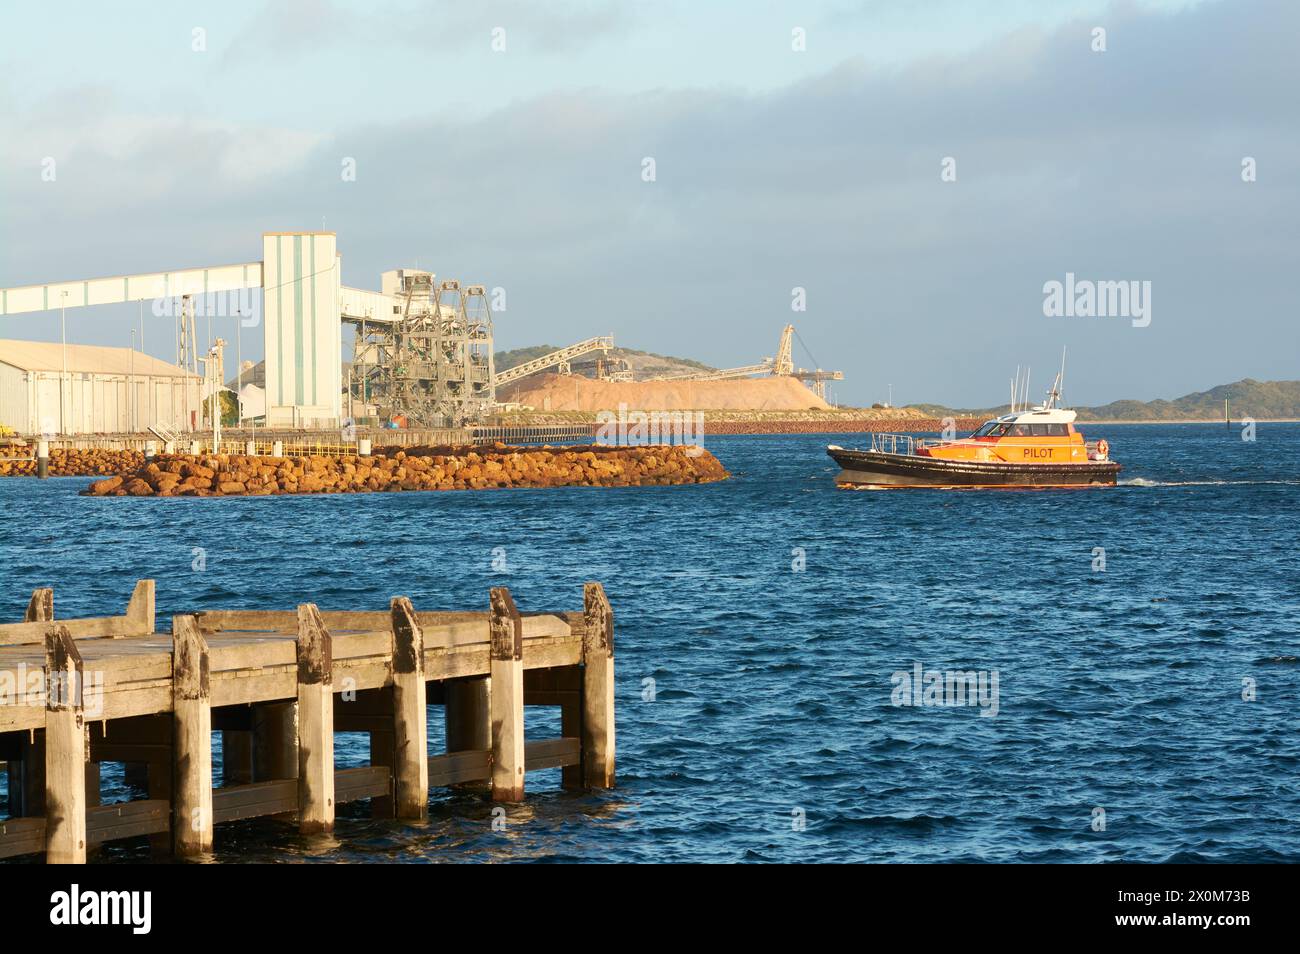 Un bateau-pilote retourne à quai dans le port de Princess Royal Harbour avec le terminal céréalier et le terminal de puce derrière, Albany, Australie occidentale. Banque D'Images